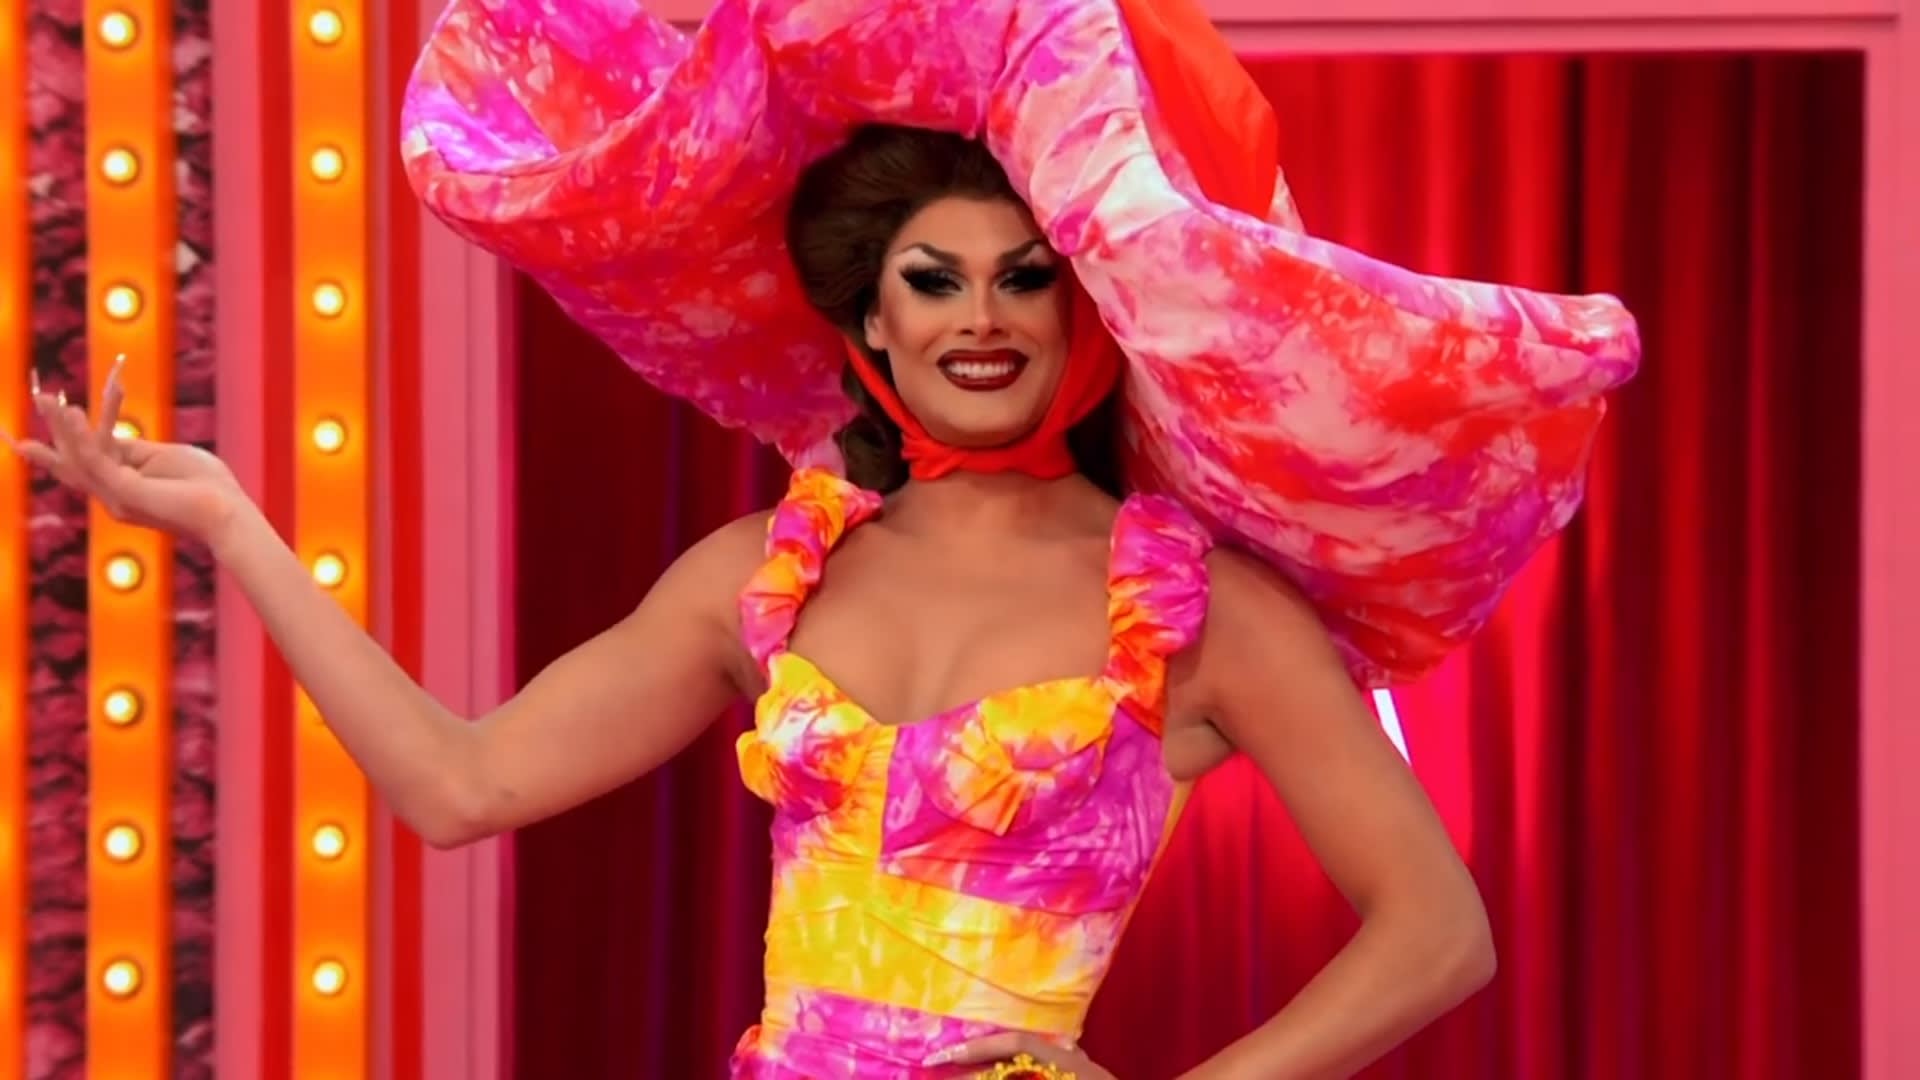 Cena do reality show All Stars 6, mostra a entrada da drag queen branca e magra Scarlet Envy. Ela sorri, e veste vestido e chapelão em tie-dye, misturando as cores amarelo, rosa e roxo. Ao fundo, vemos as cortinas vermelhas do Ateliê.